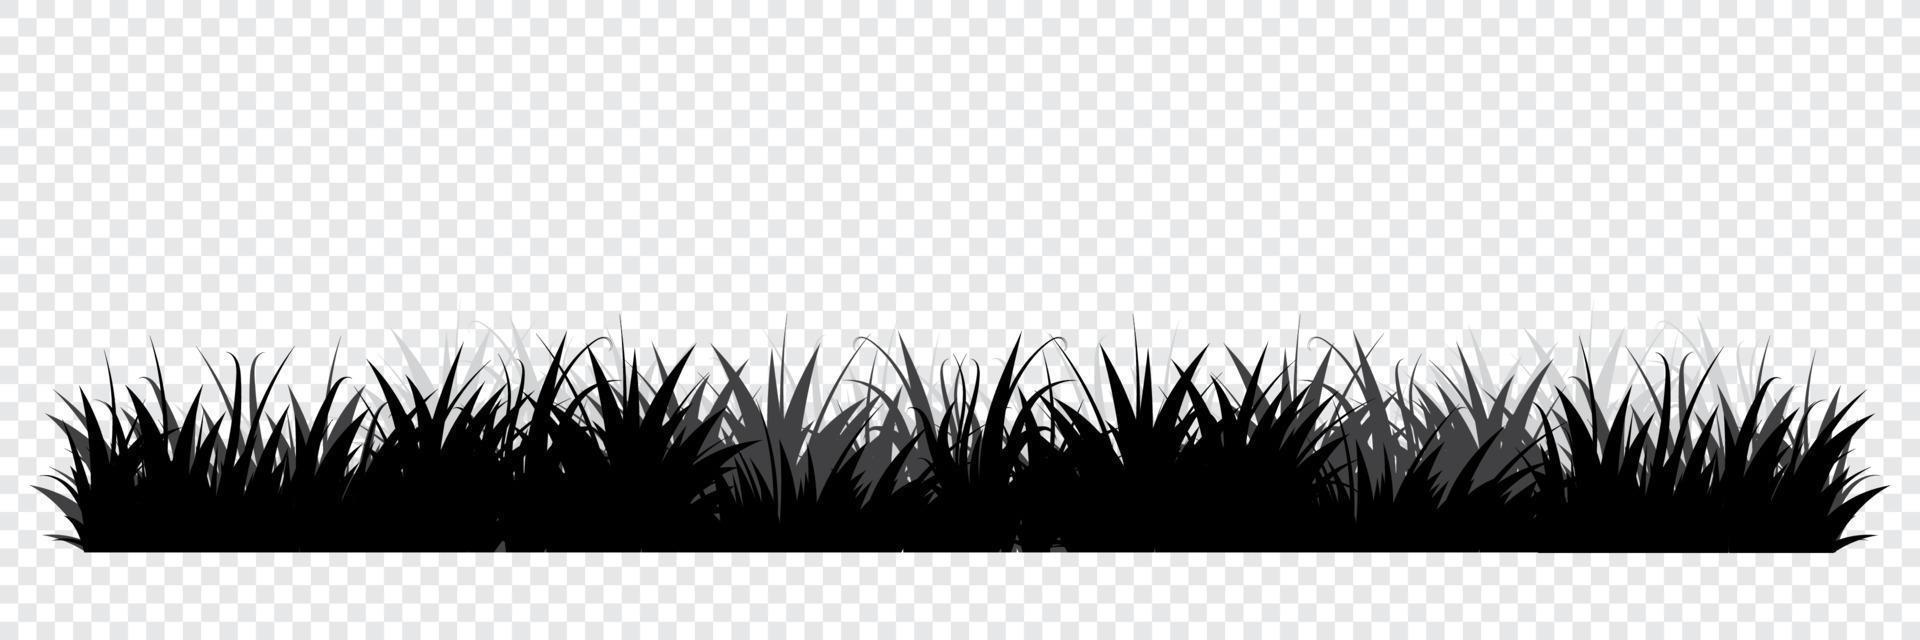 schwarze Grassilhouetten. Blumenhintergrund. wildes Gras. Gras grenzt Silhouette. Vektor-Illustration vektor